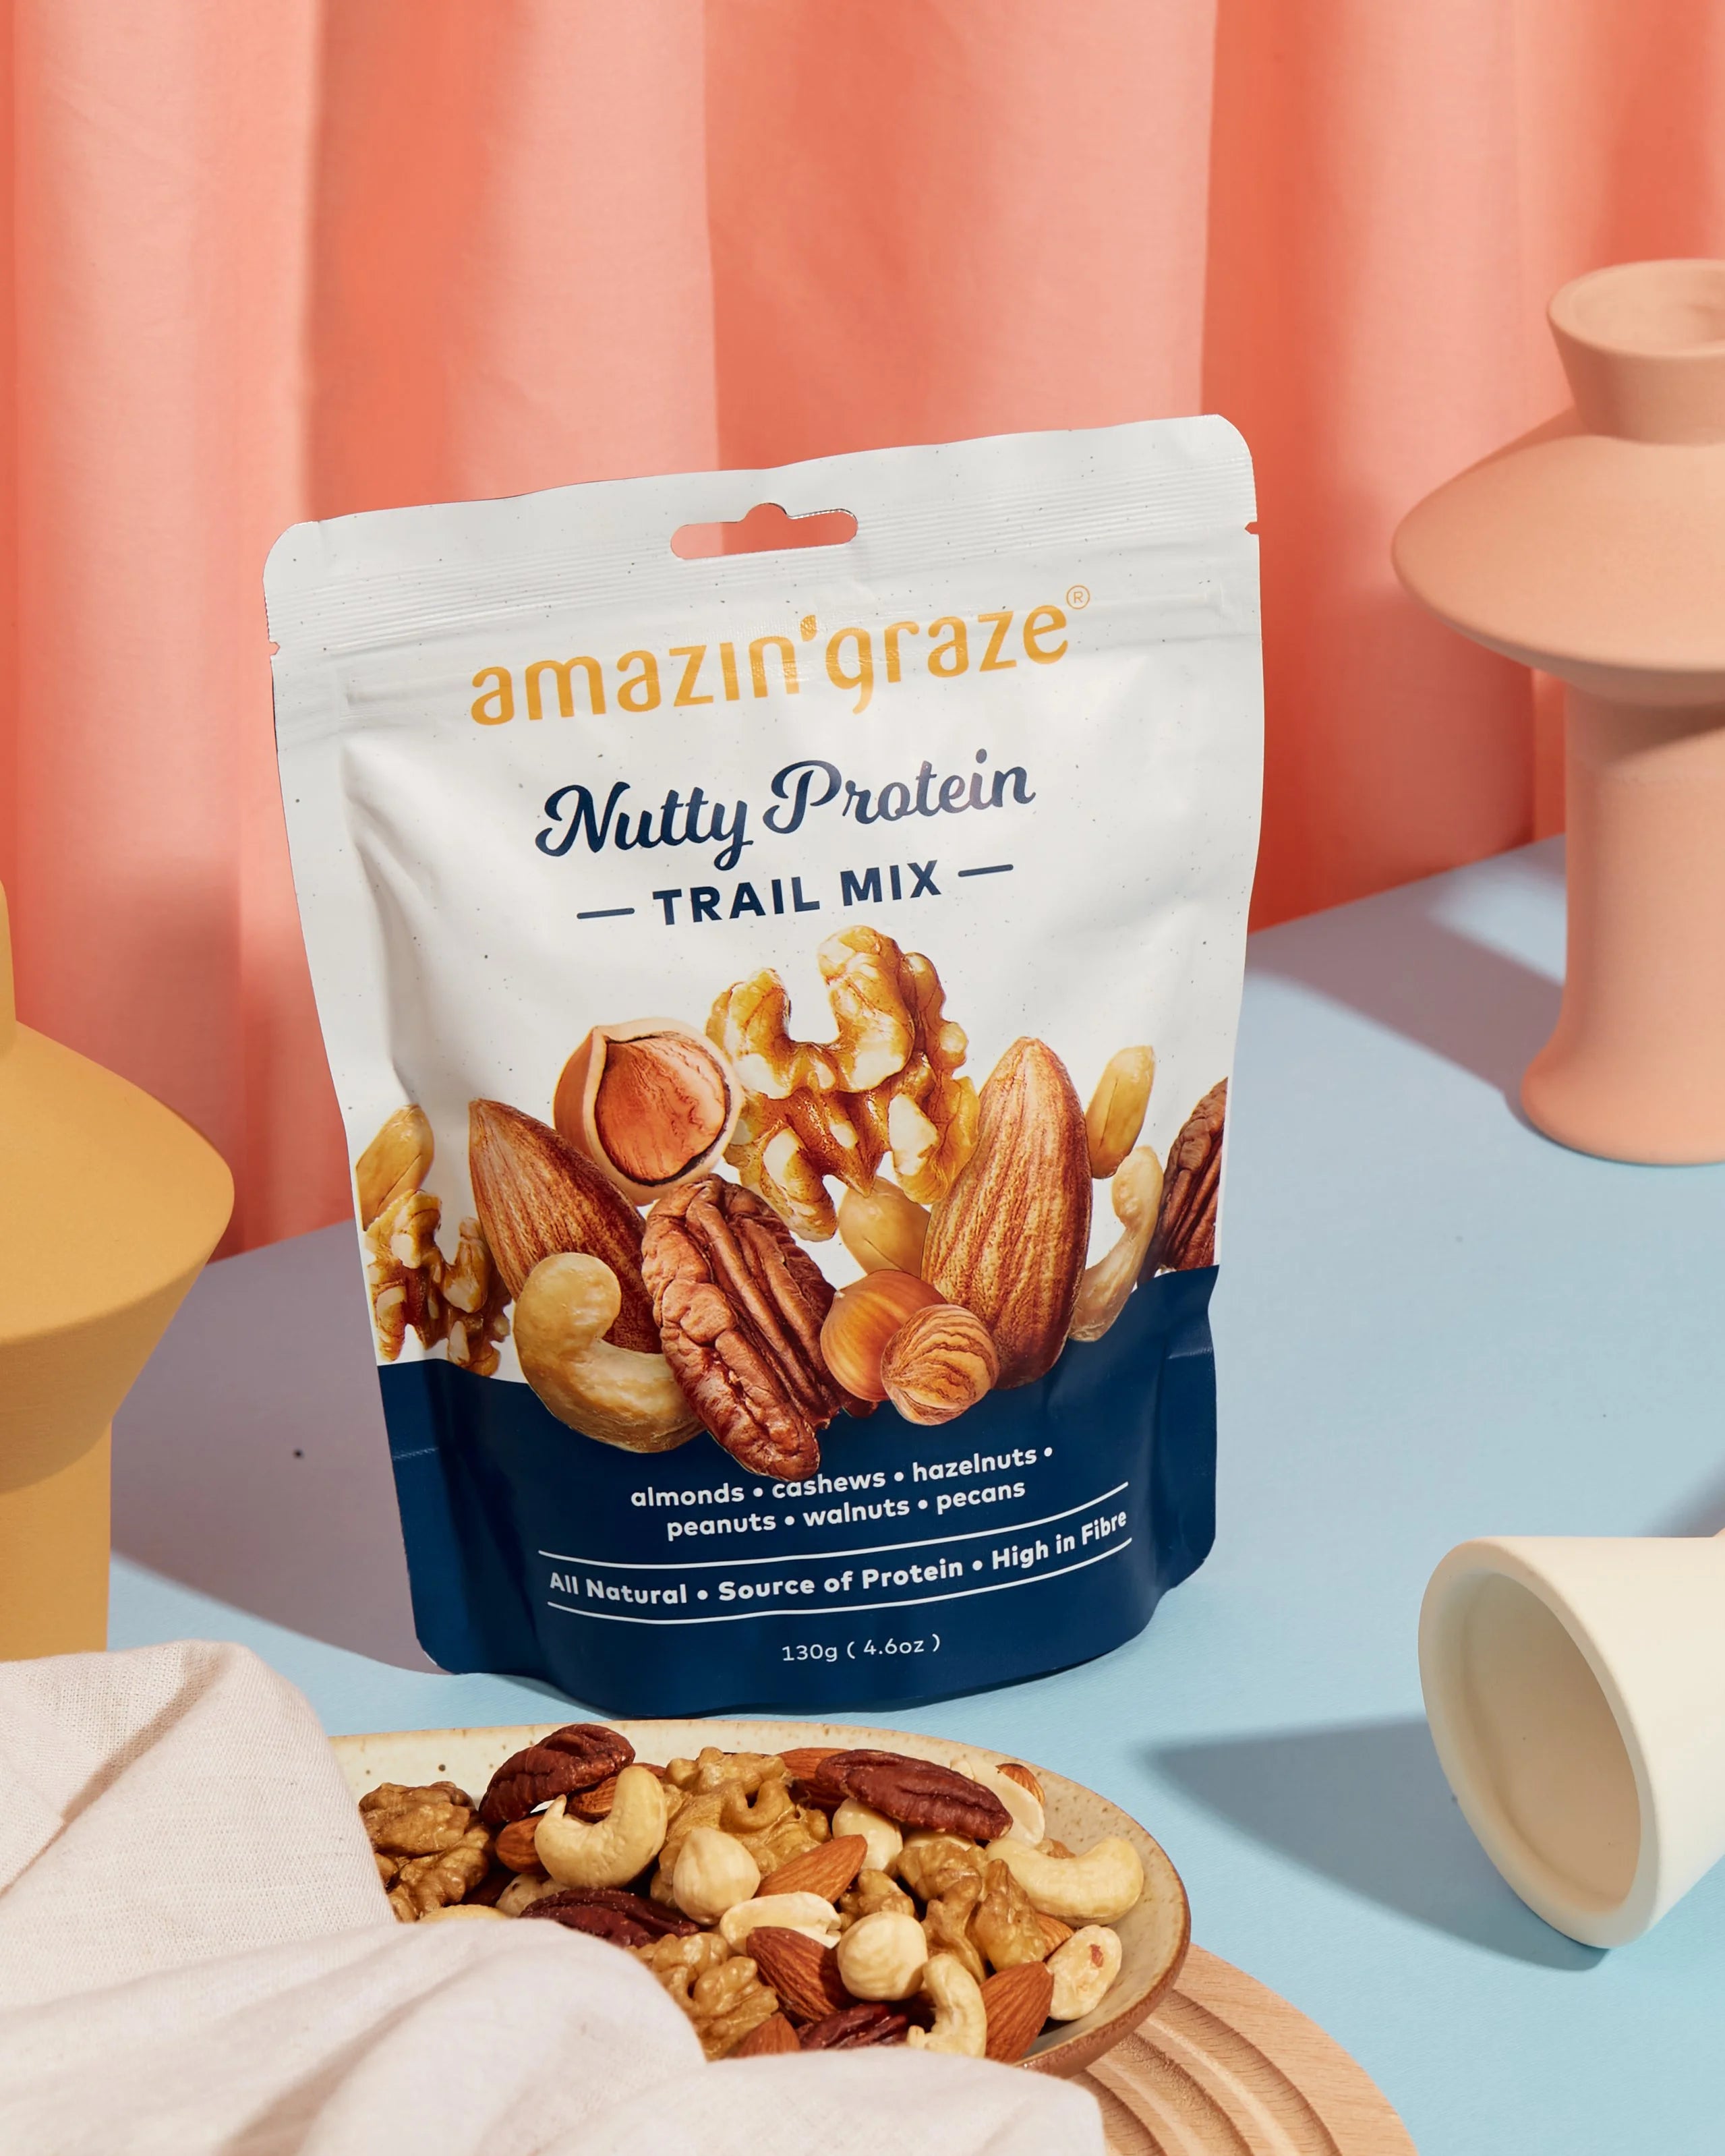 Amazin' Graze Nutty Protein Trail Mix Product